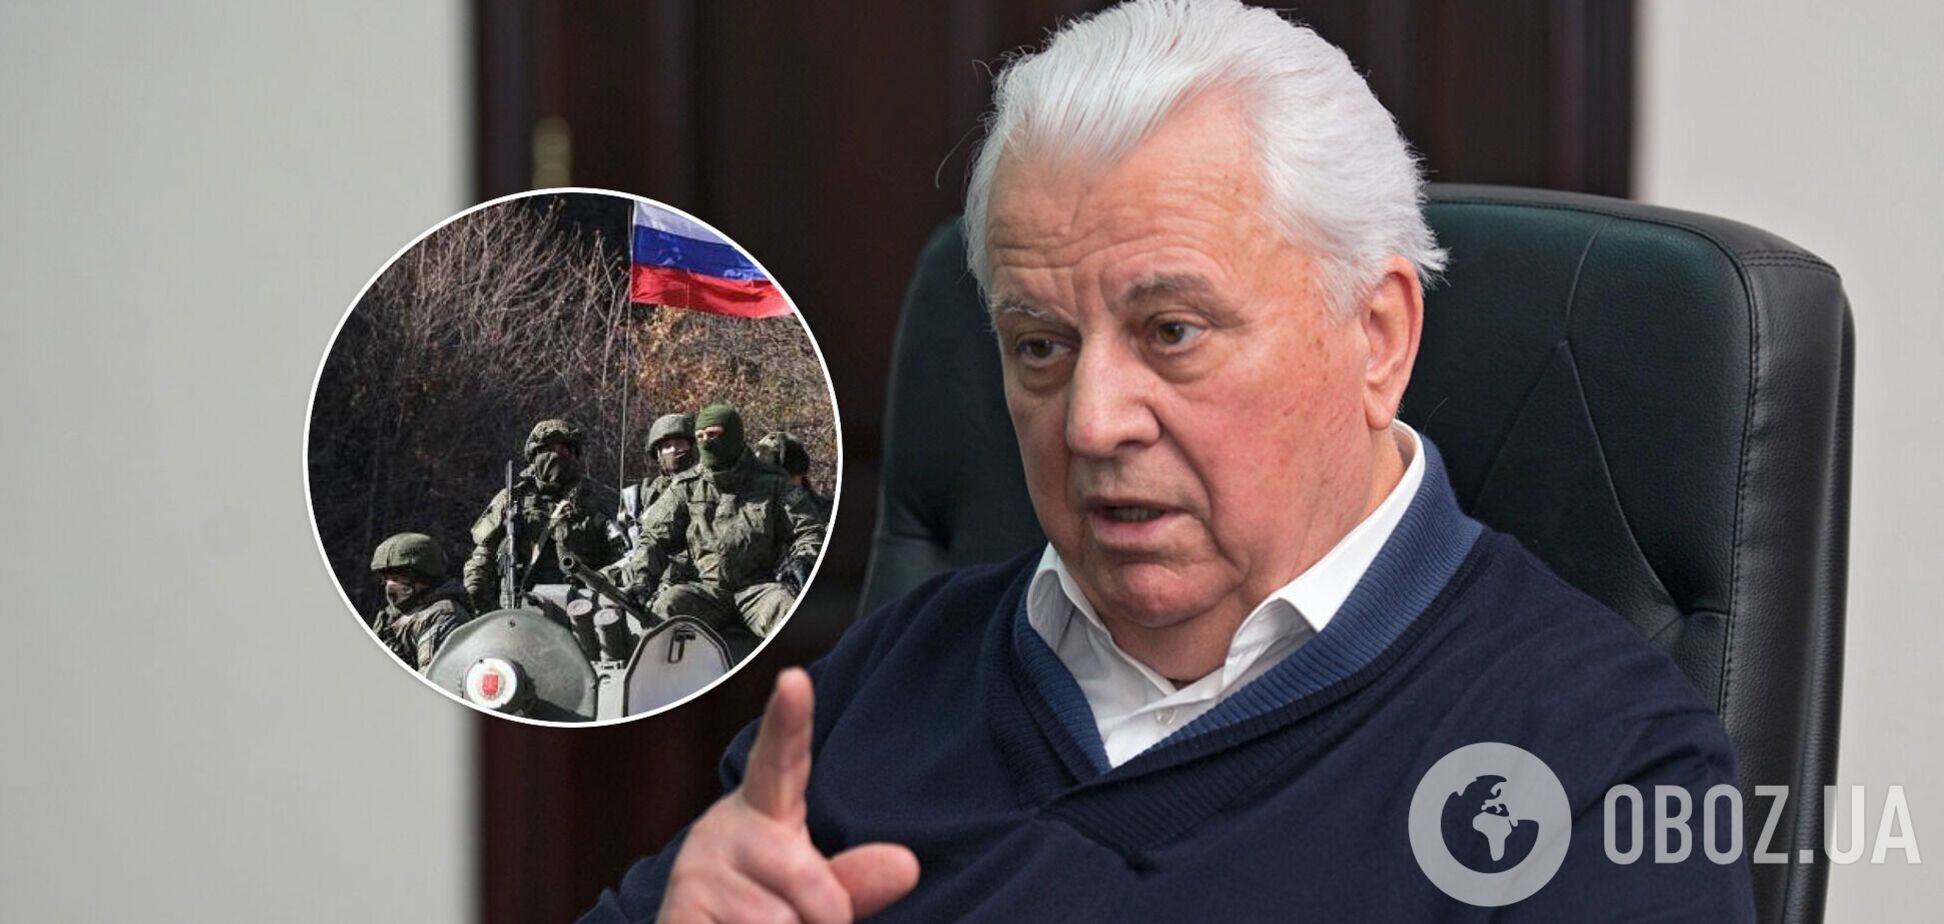 Кравчук: відведення військ РФ не змінює її стратегічної політики щодо України